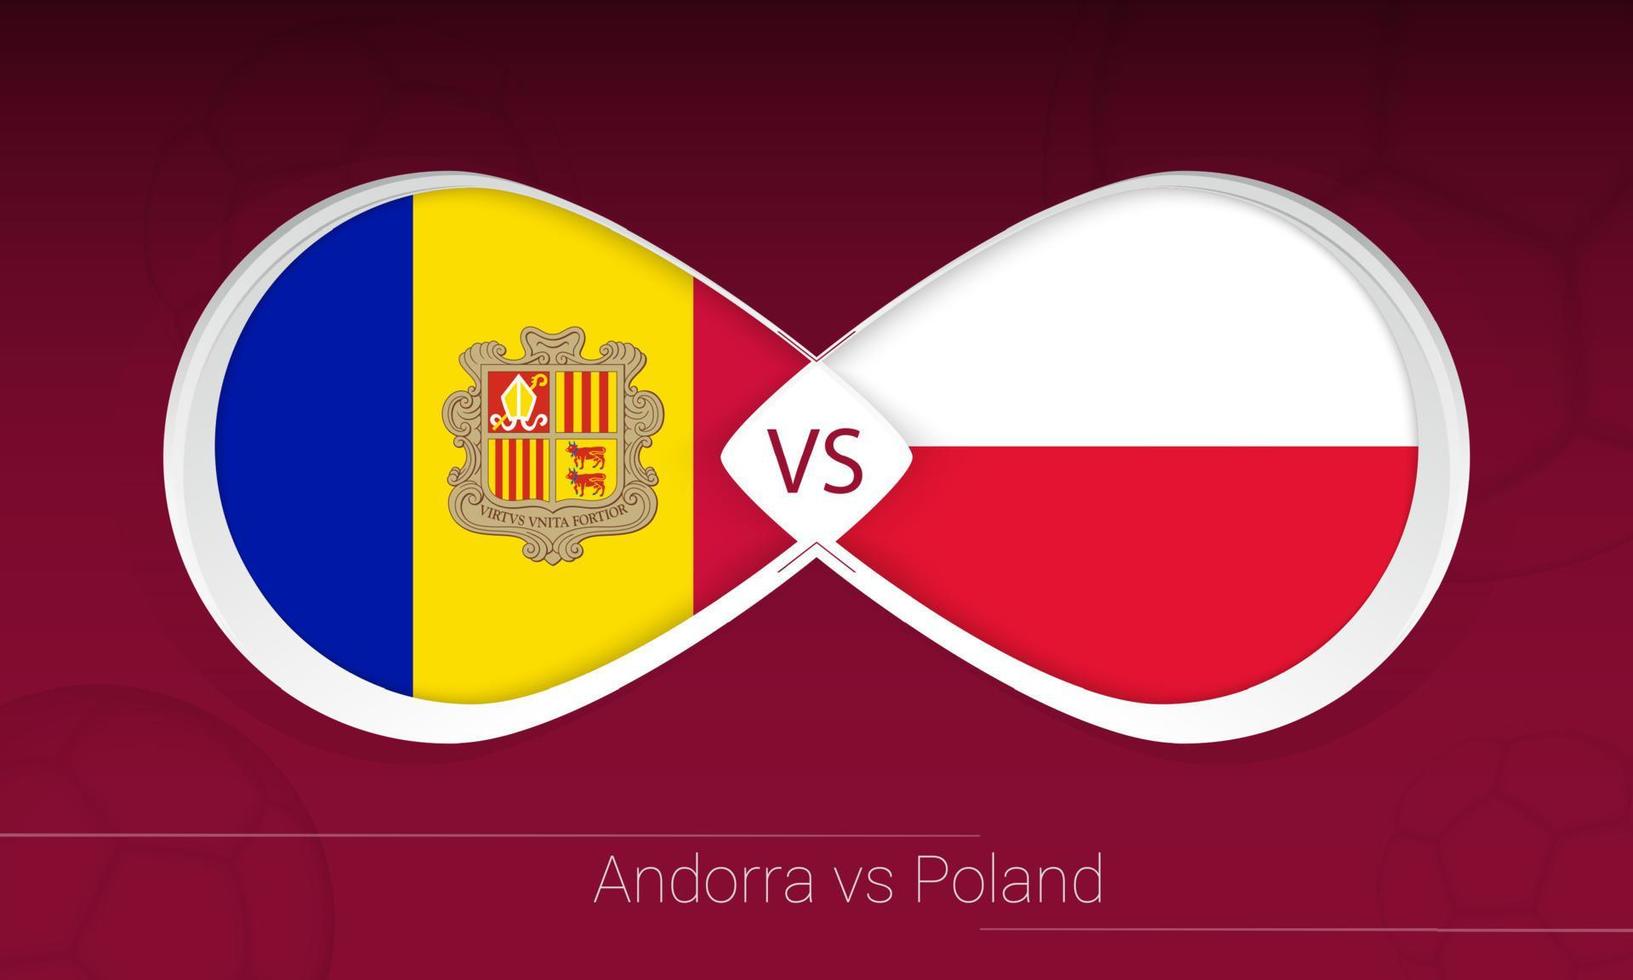 andorra vs polonia en competición de fútbol, grupo i. versus icono en el fondo del fútbol. vector